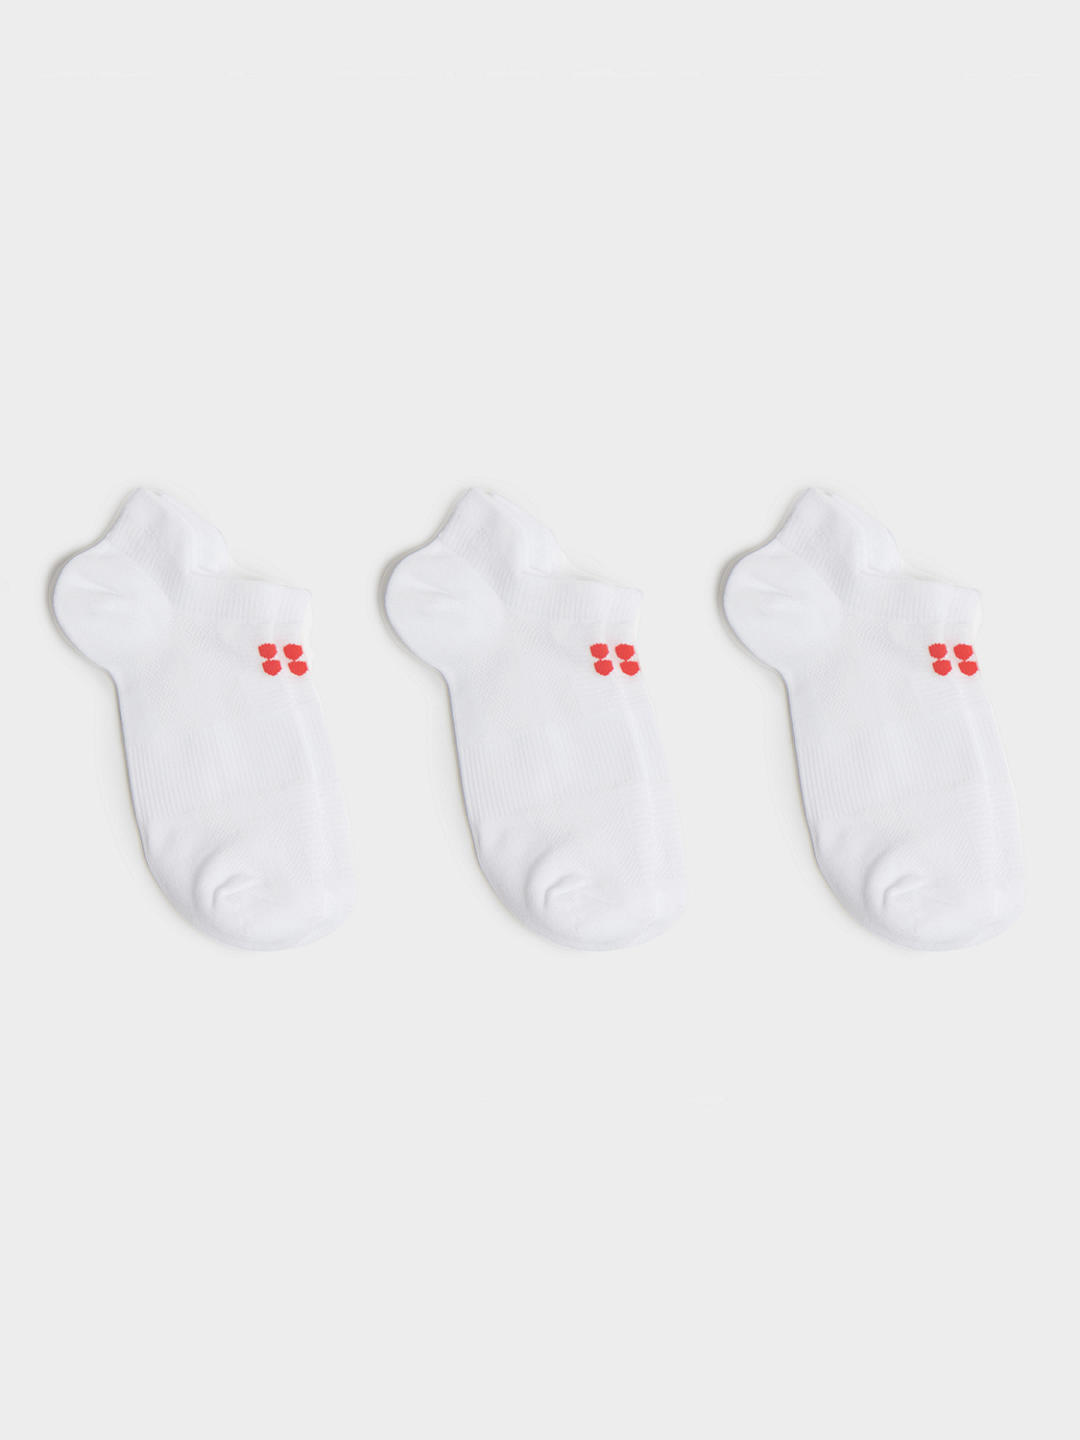 Sweaty Betty Lightweight Trainer Socks, Pack of 3, White